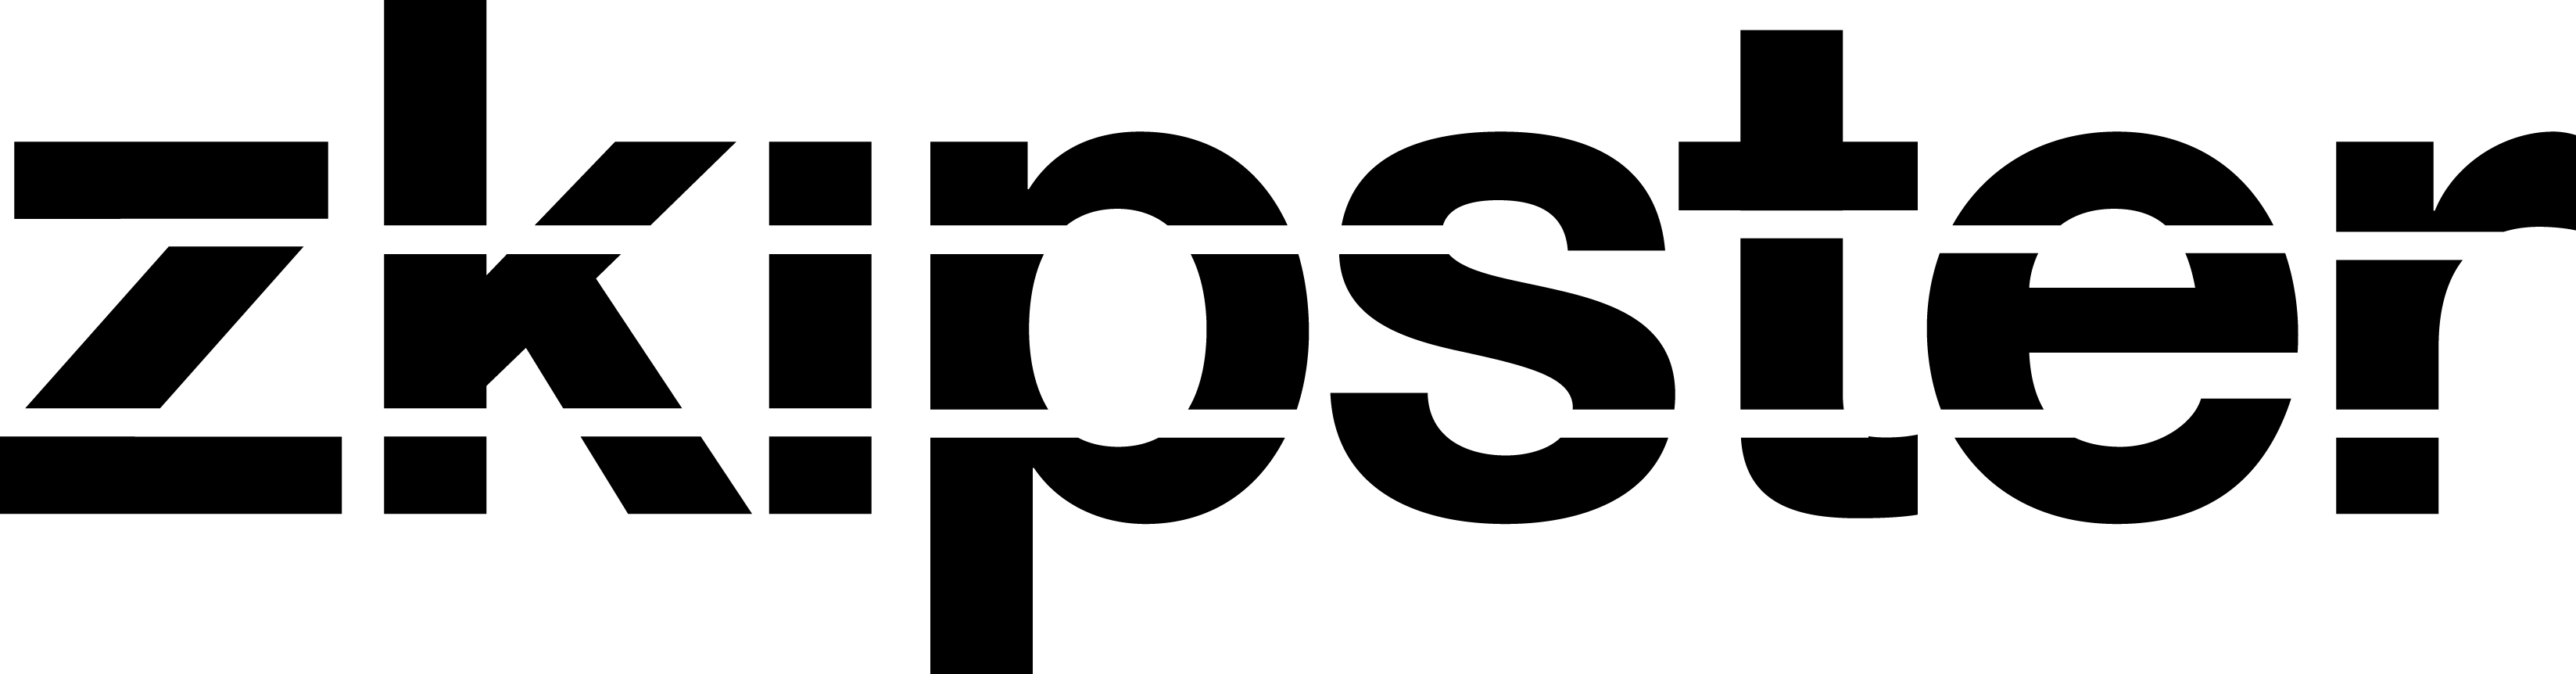 Zkipster logo